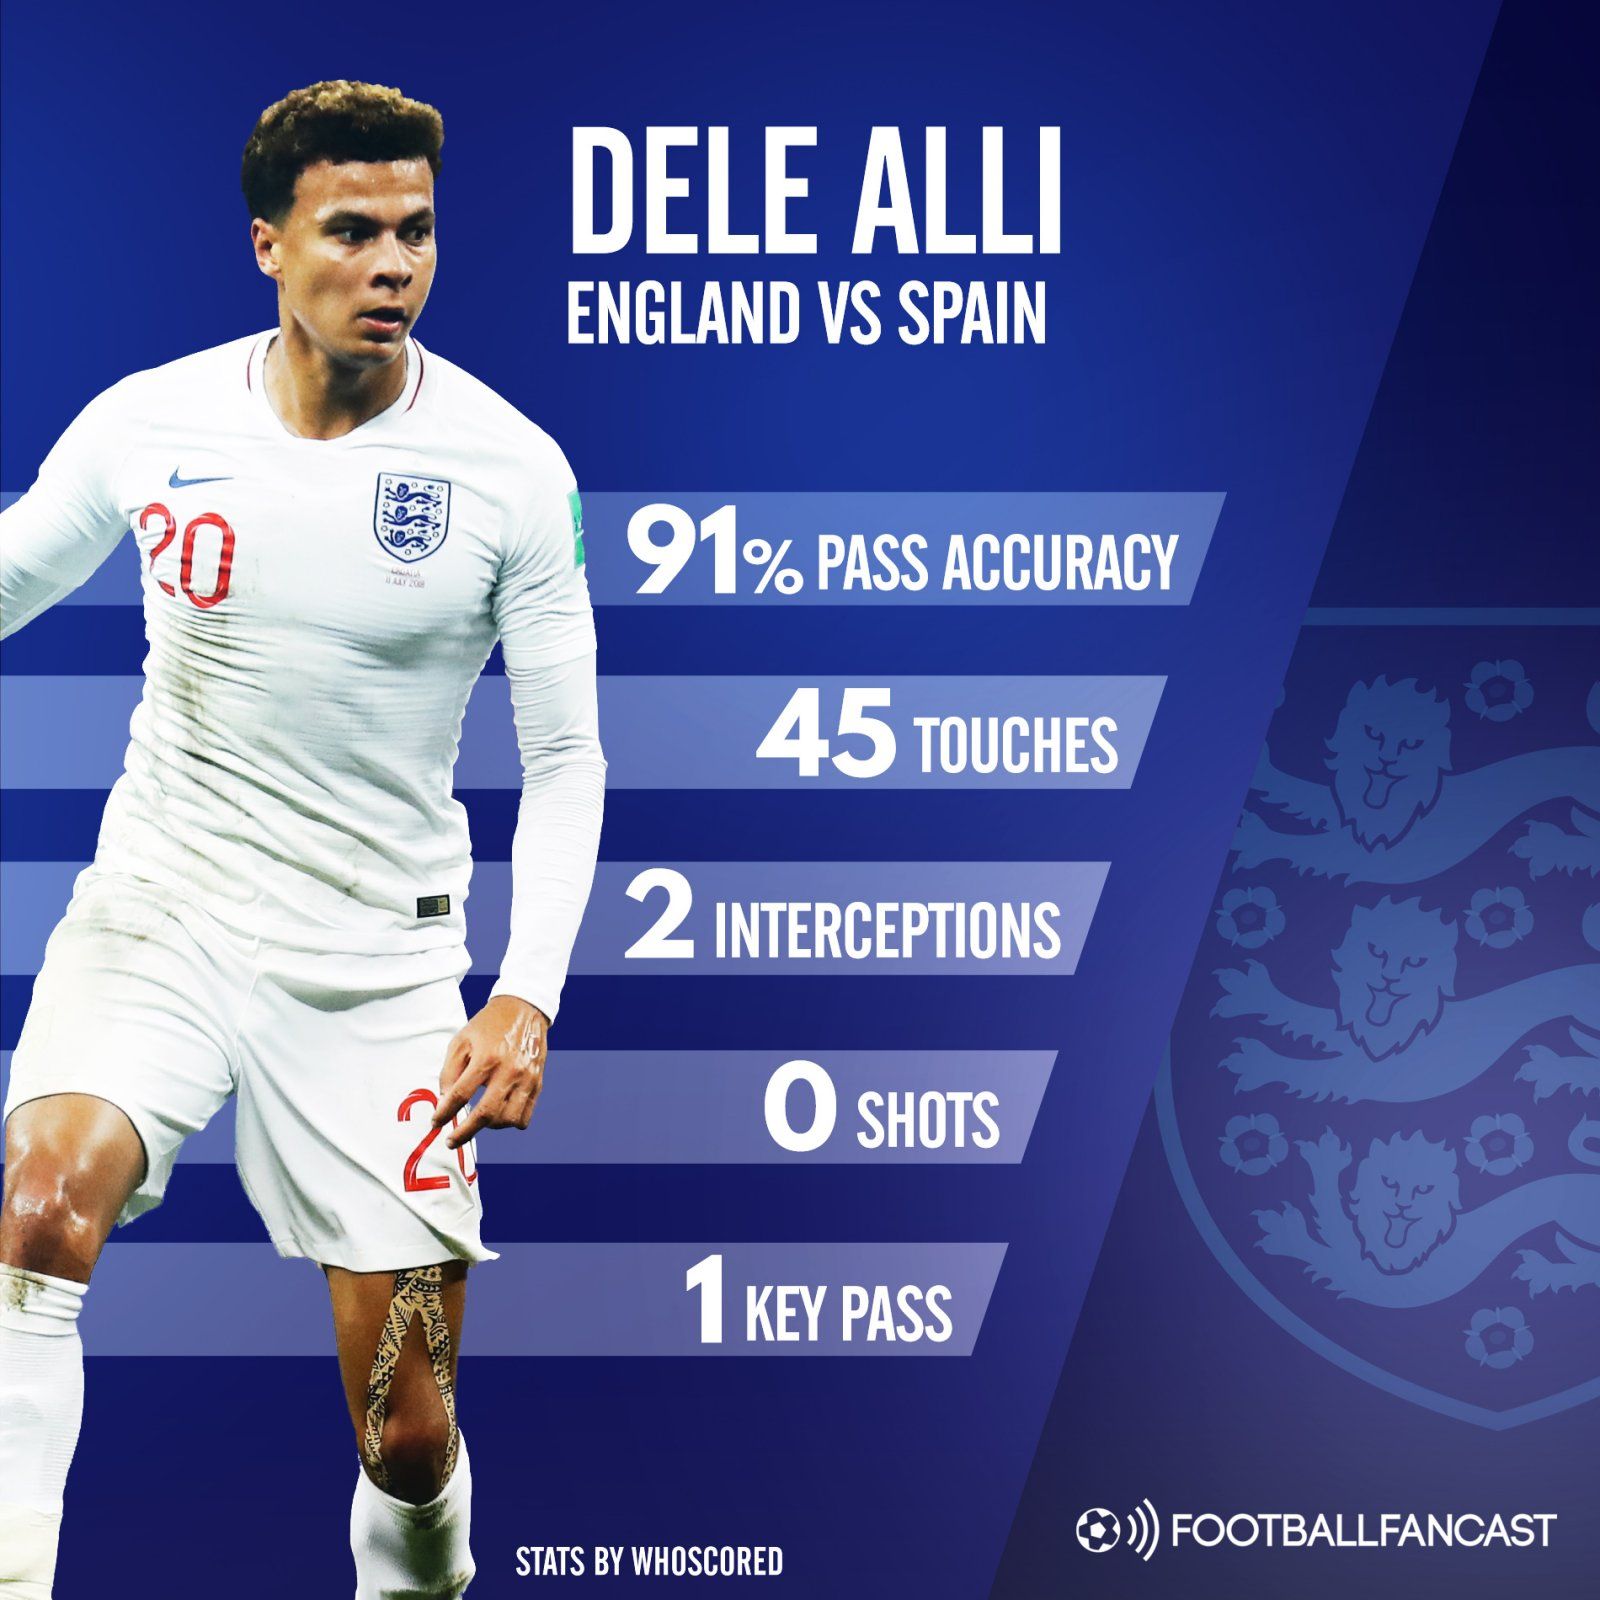 Tottenham Hotspur midfielder Dele Alli's stats for England vs Spain